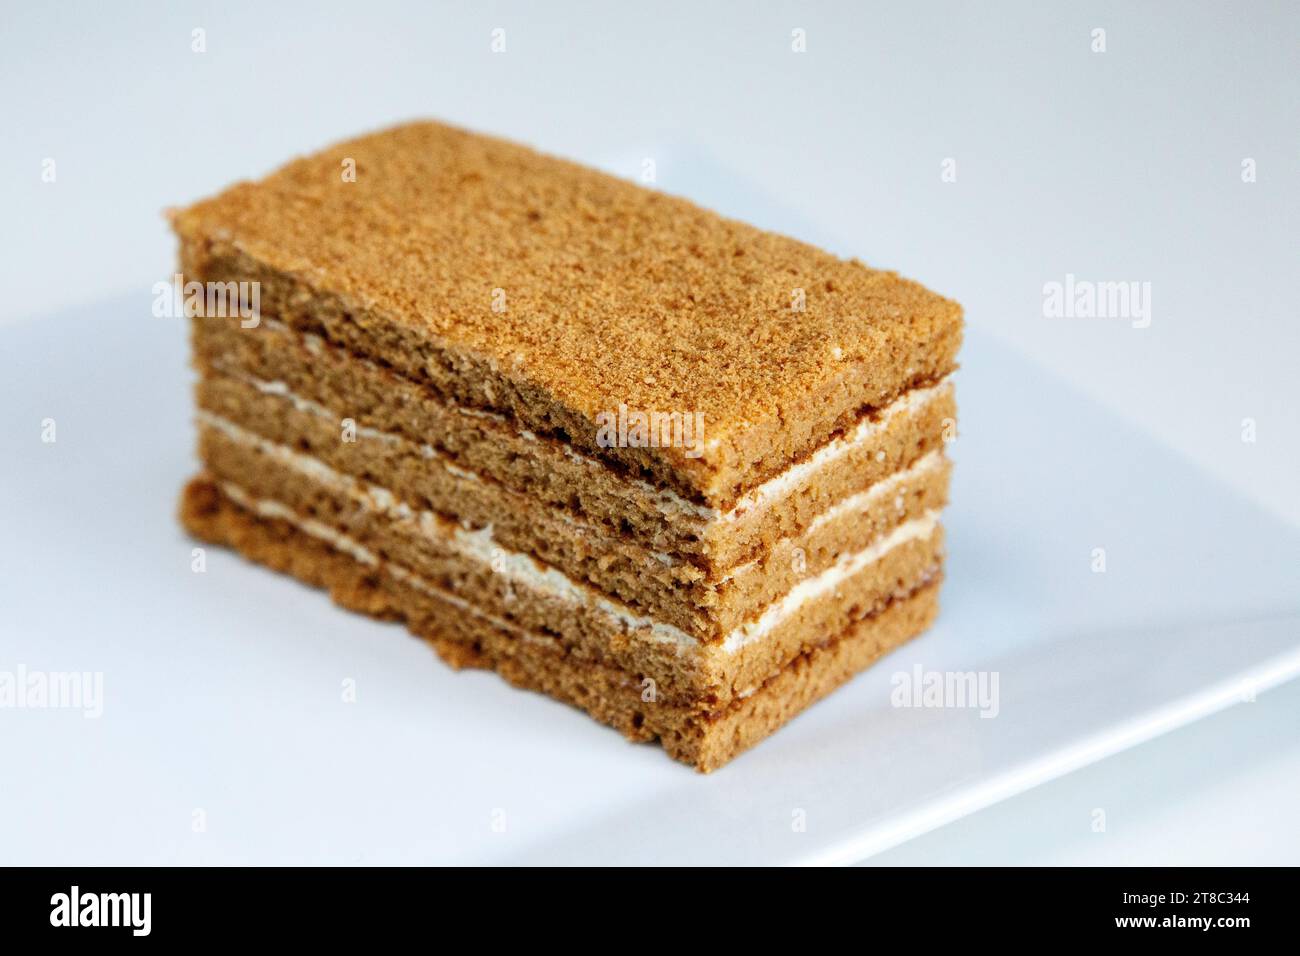 Ein Stück russischer Honigkuchen (medovik) auf einem weißen Teller Stockfoto